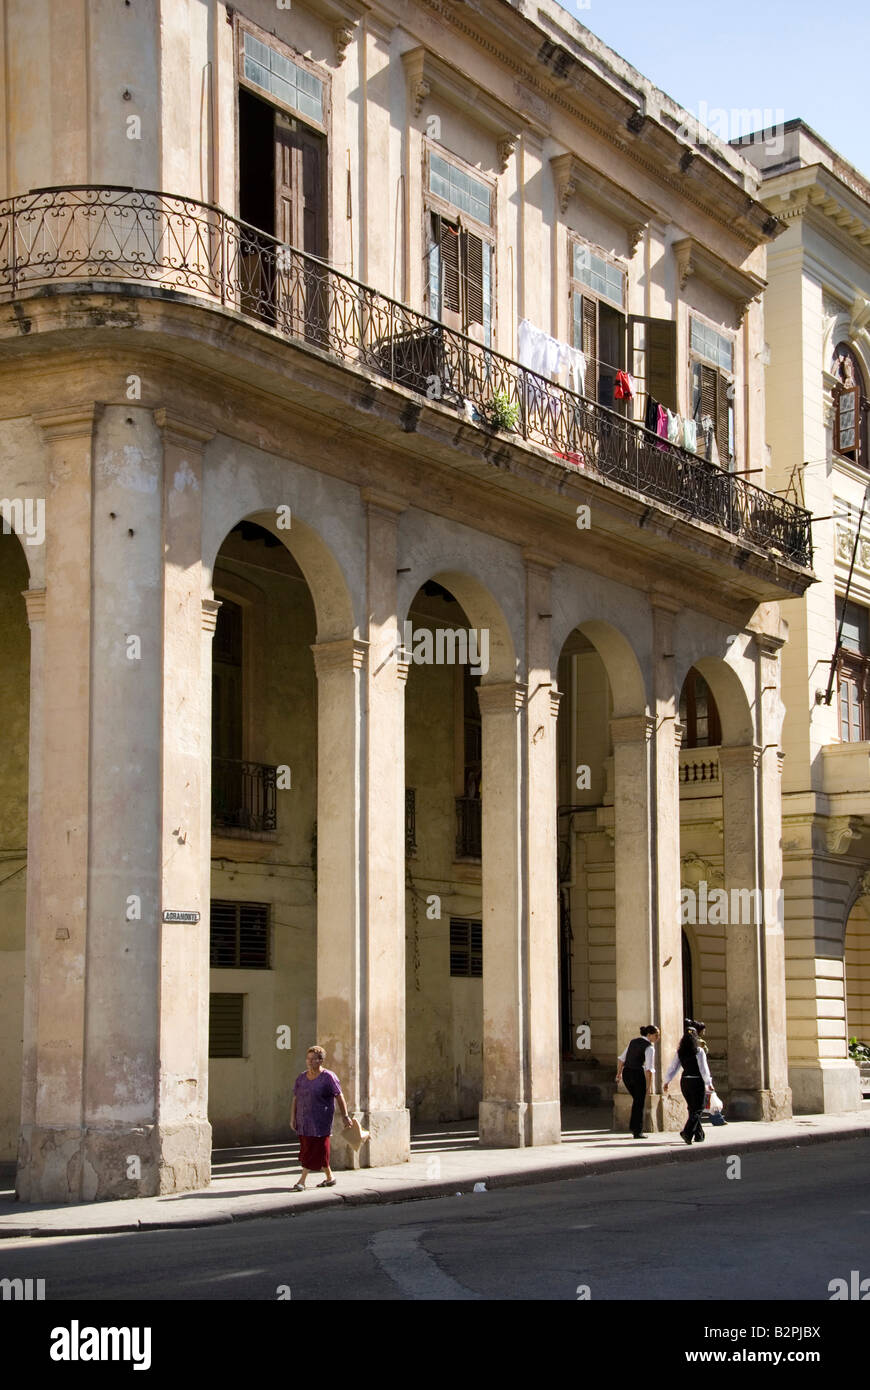 Straßenszene mit alten kolonialen Architektur in La Habana Vieja Havanna Kuba Stockfoto